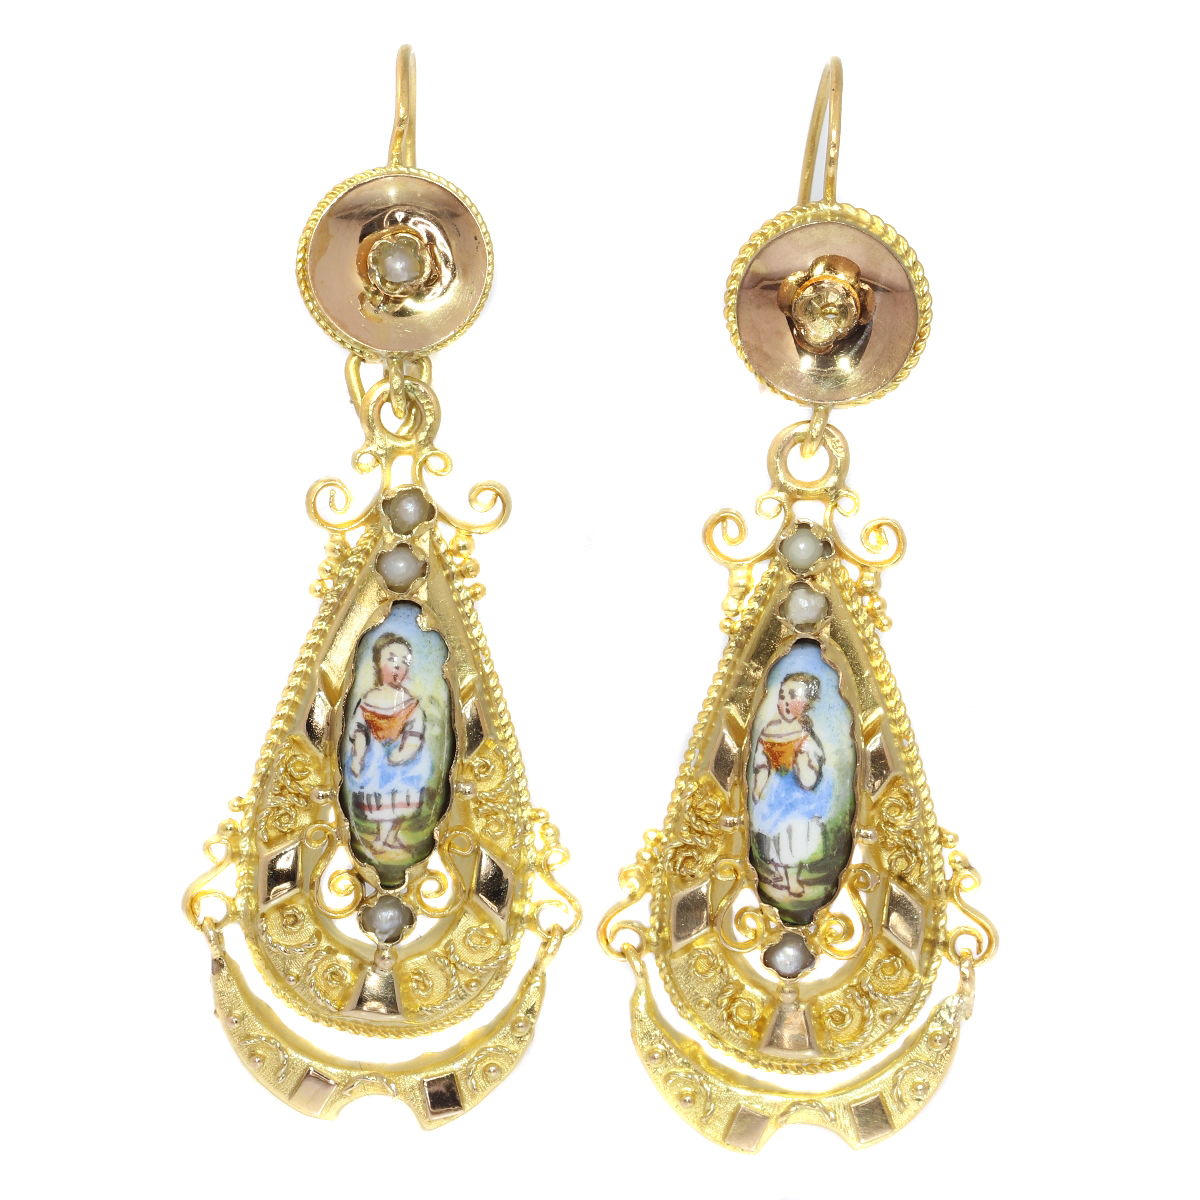 Gold Biedermeier earrings long pendant Victorian earrings with enamel